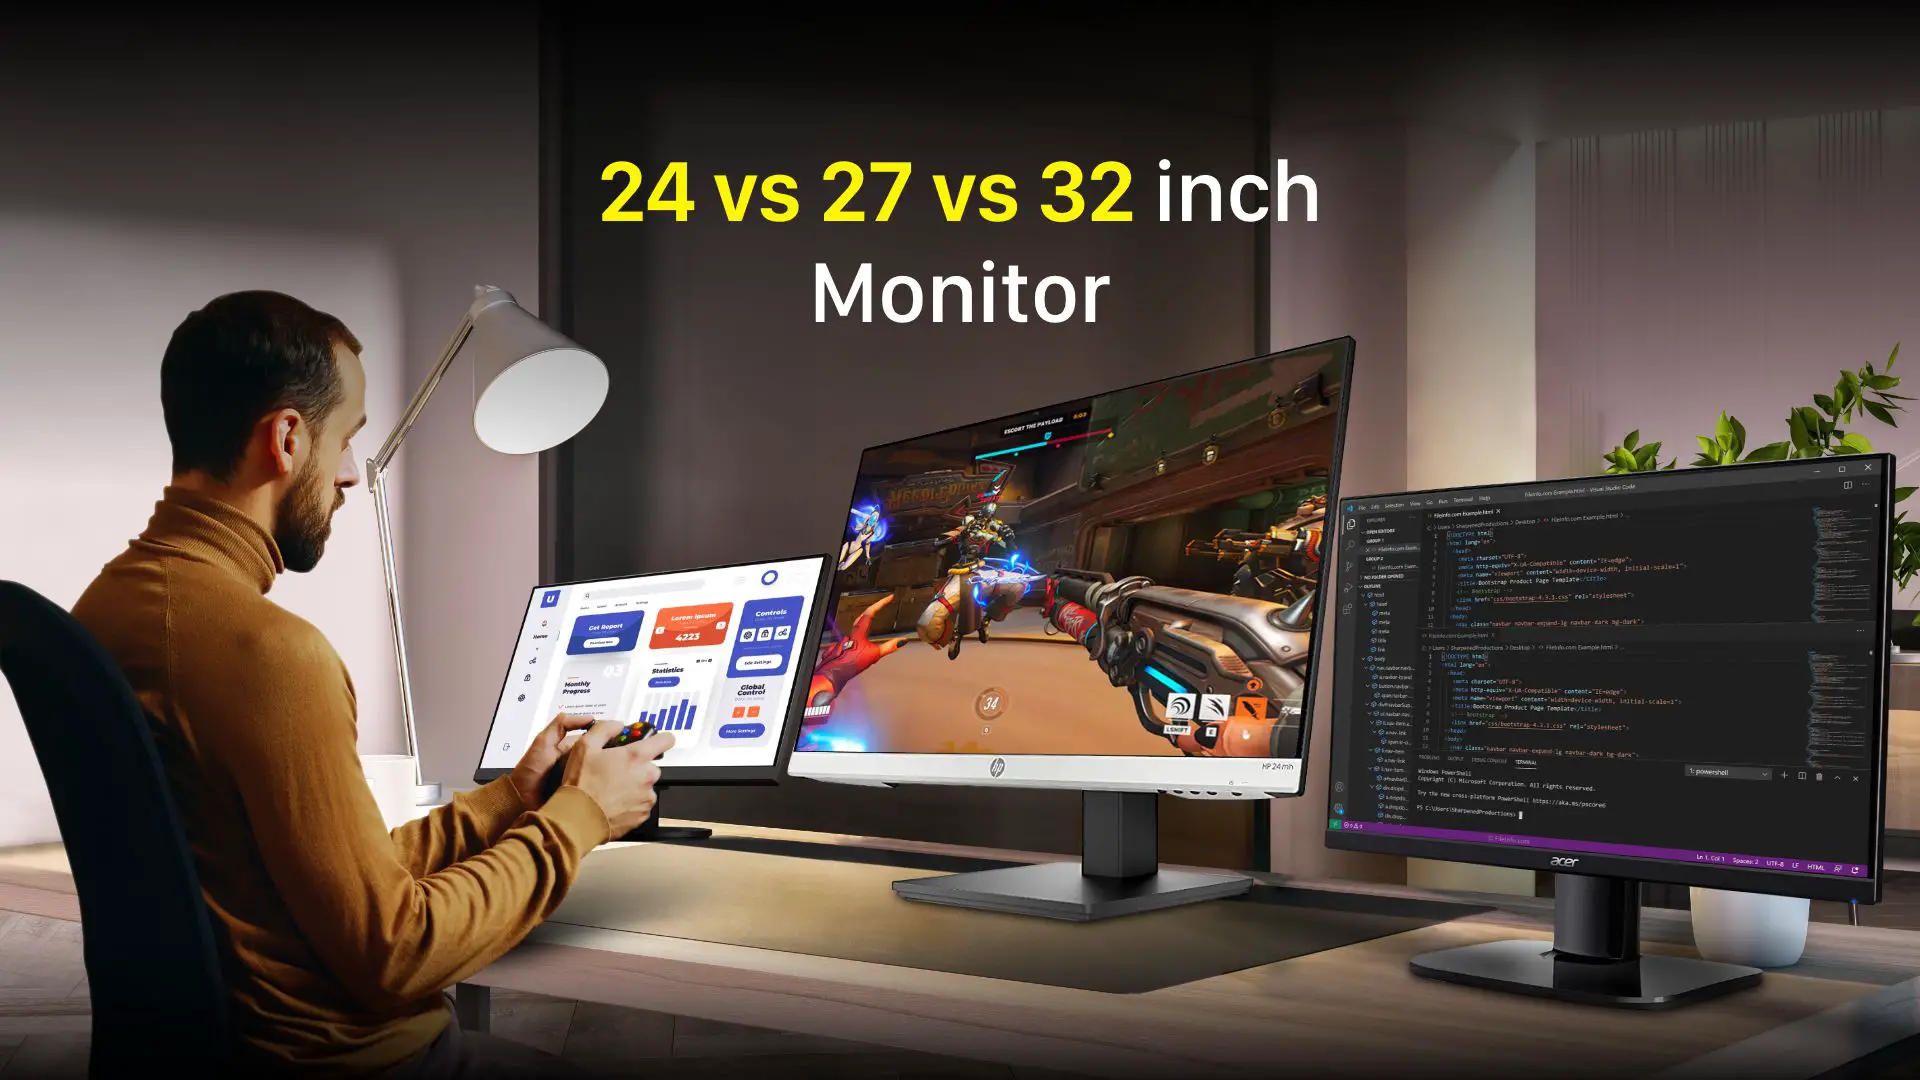 24 Vs 27 Vs 32 inch Monitor – Detailed Comparison